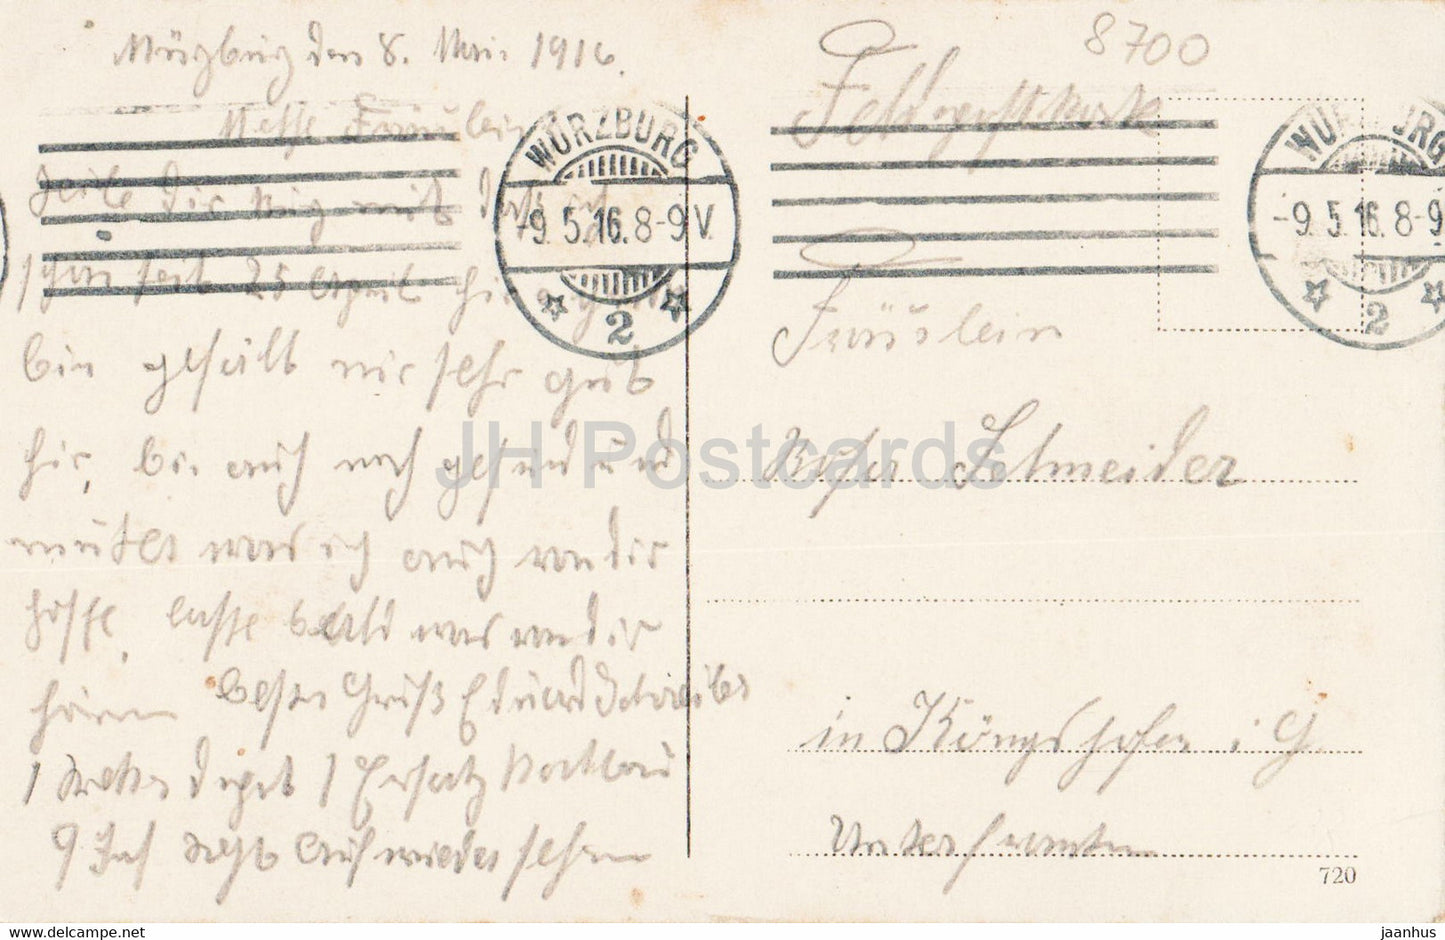 Wurzburg - Alte Mainbrucke - pont - Feldpost - courrier militaire - carte postale ancienne - 1916 - Allemagne - utilisé